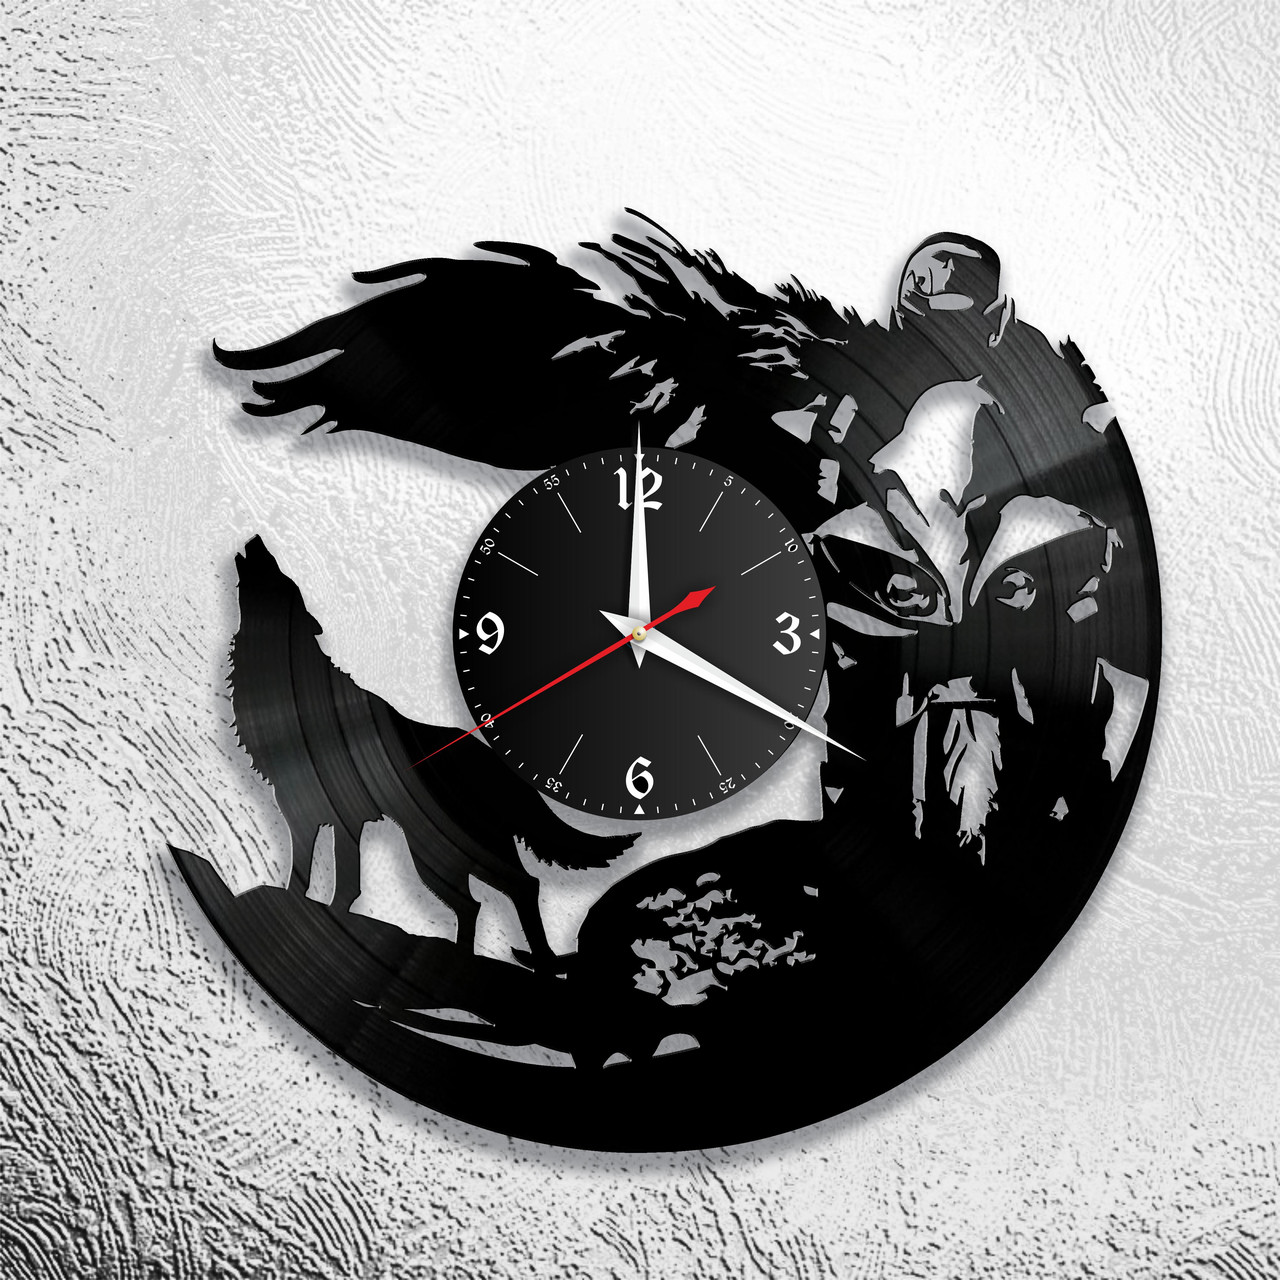 Оригинальные часы из виниловых пластинок  "Мото" версия 10